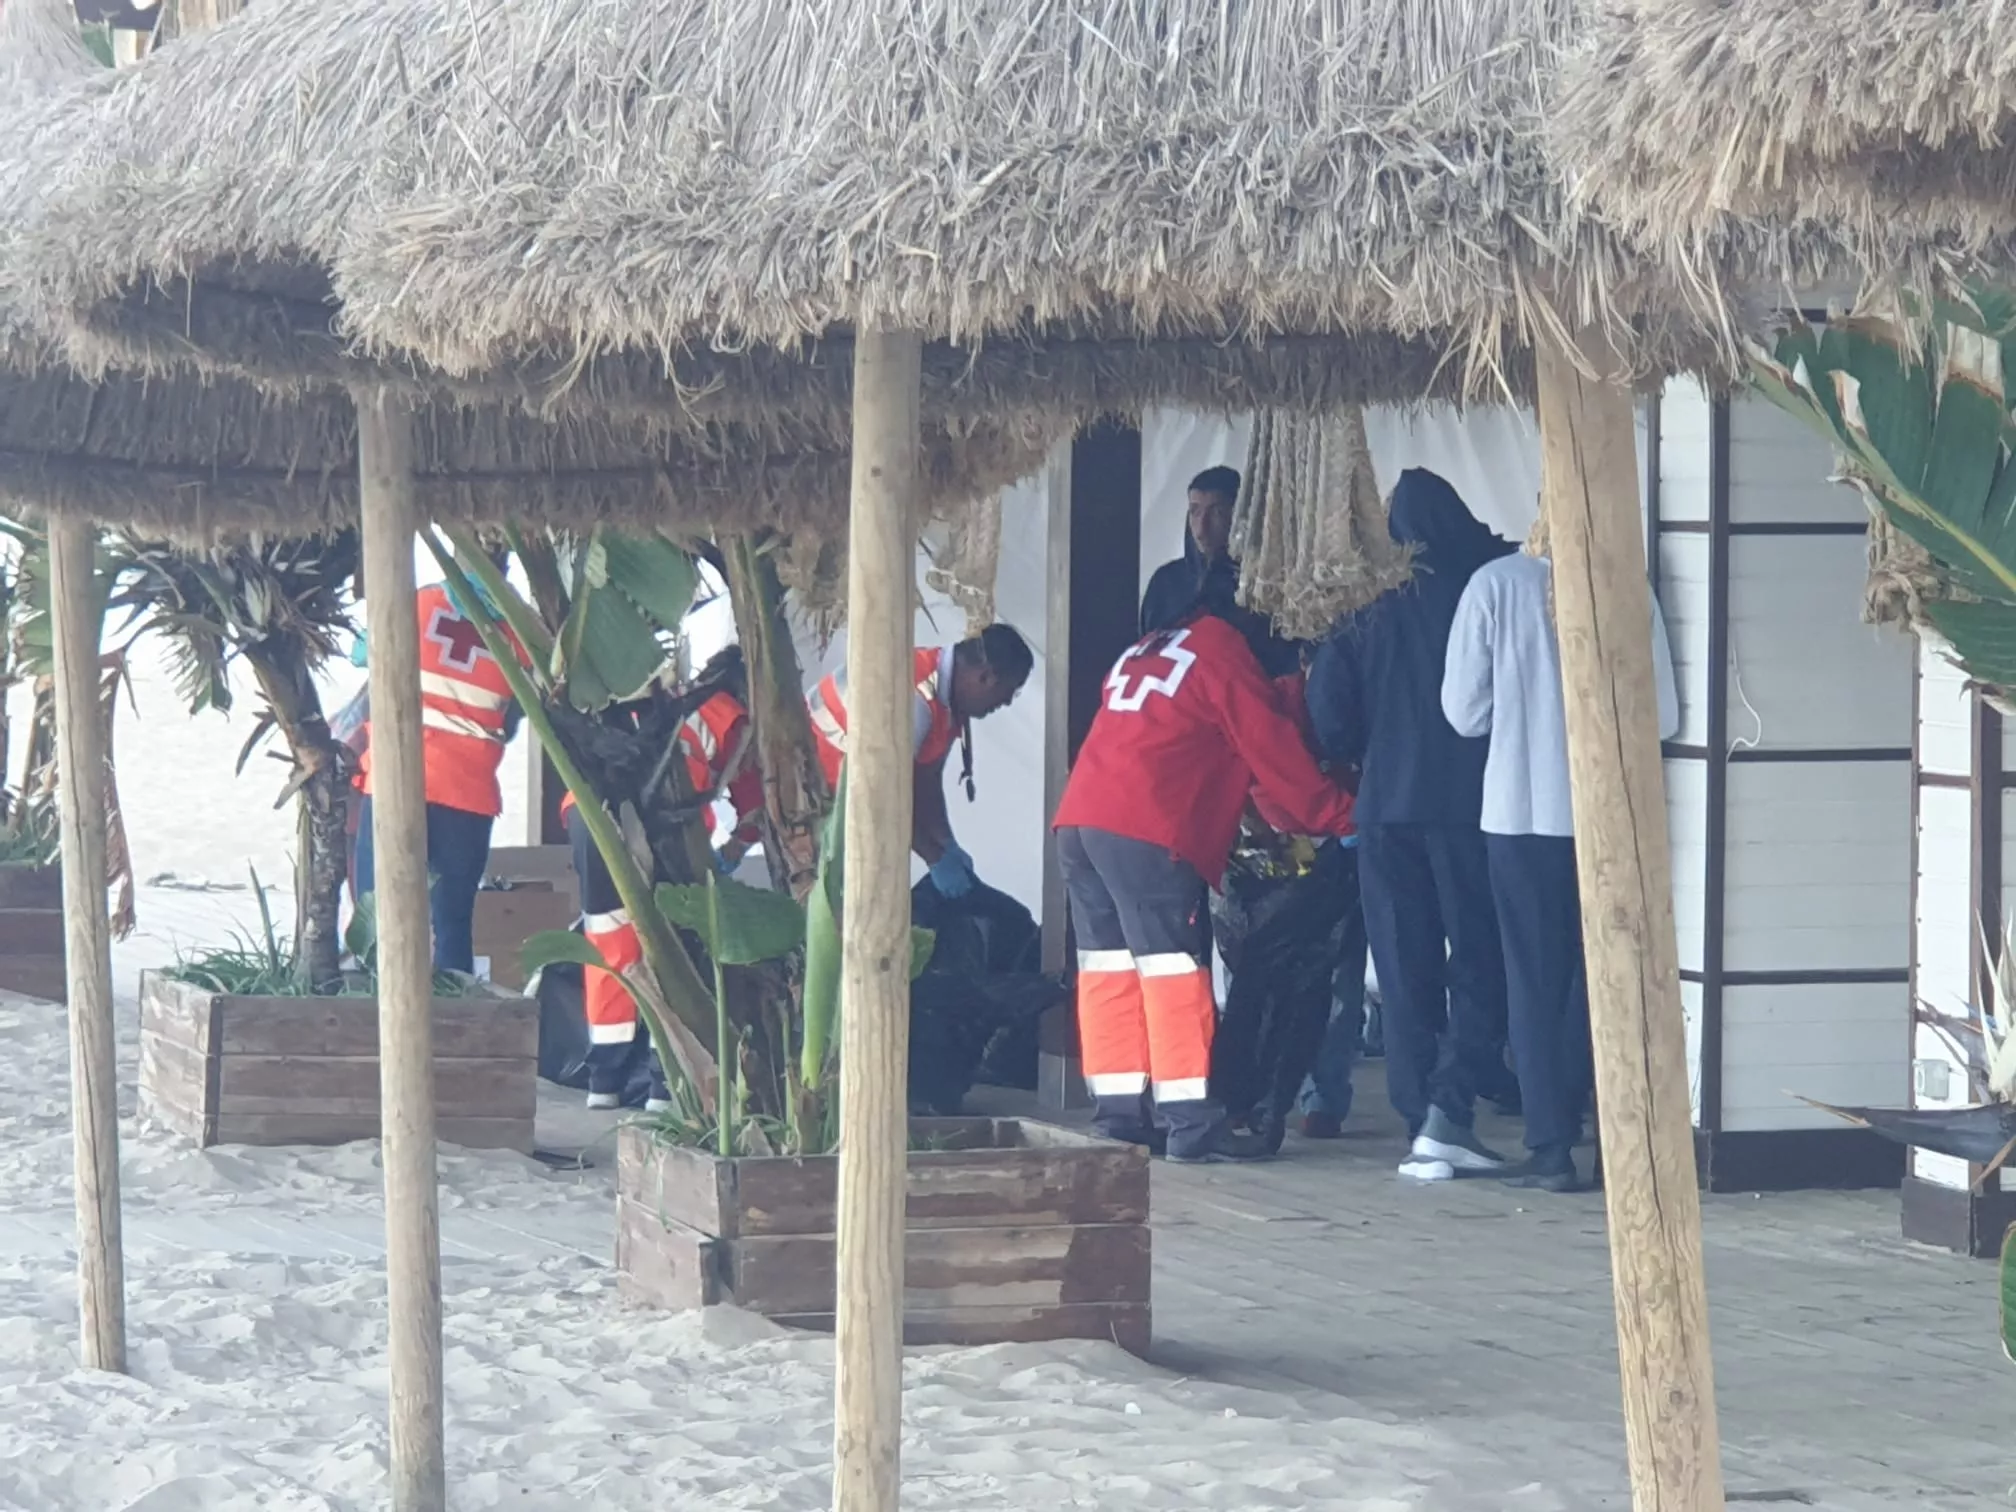 Miembros de Protección Civil y Cruz Roja socorren algunos de los desembarcados poco después de arribar a la costa